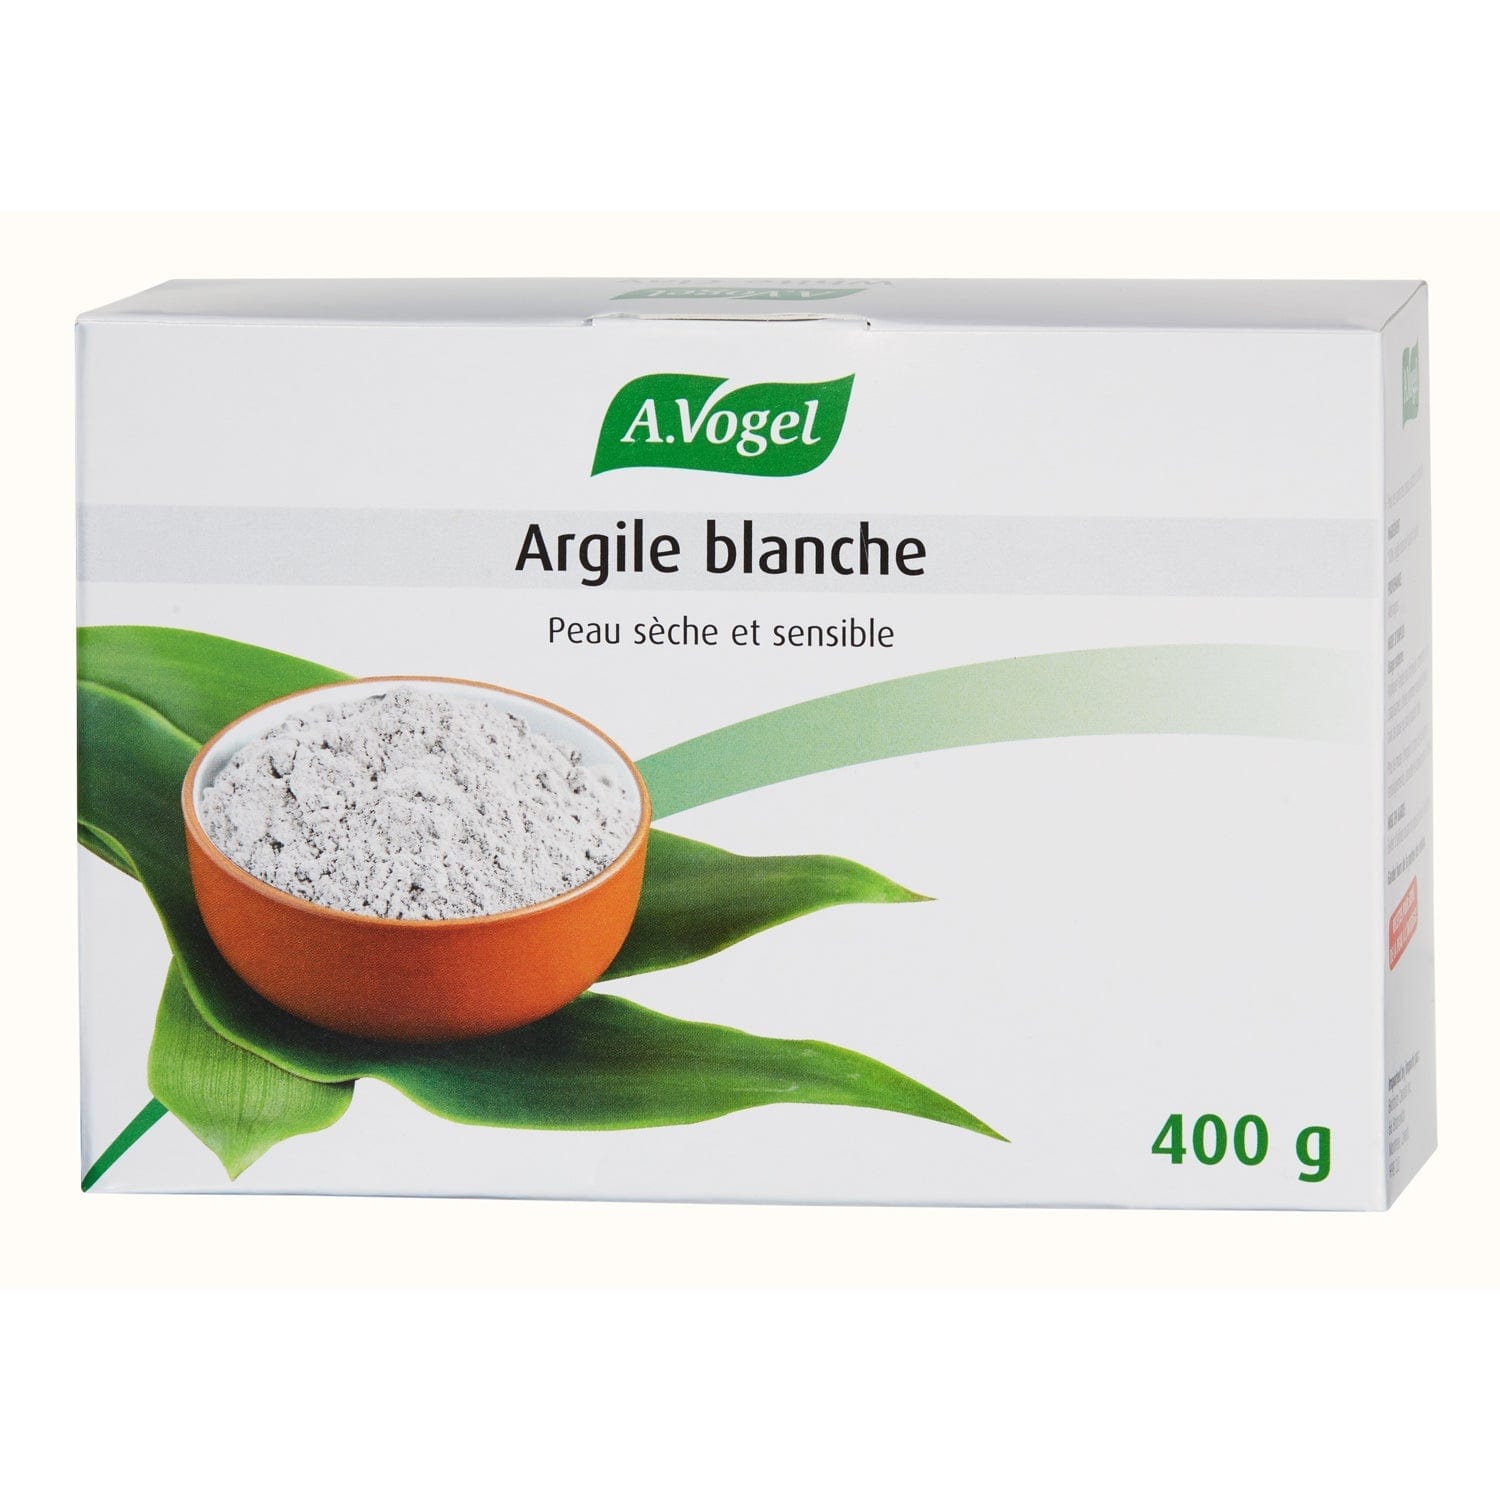 BIOFORCE (A. VOGEL) Soins & beauté Argile blanche (légère) 400g